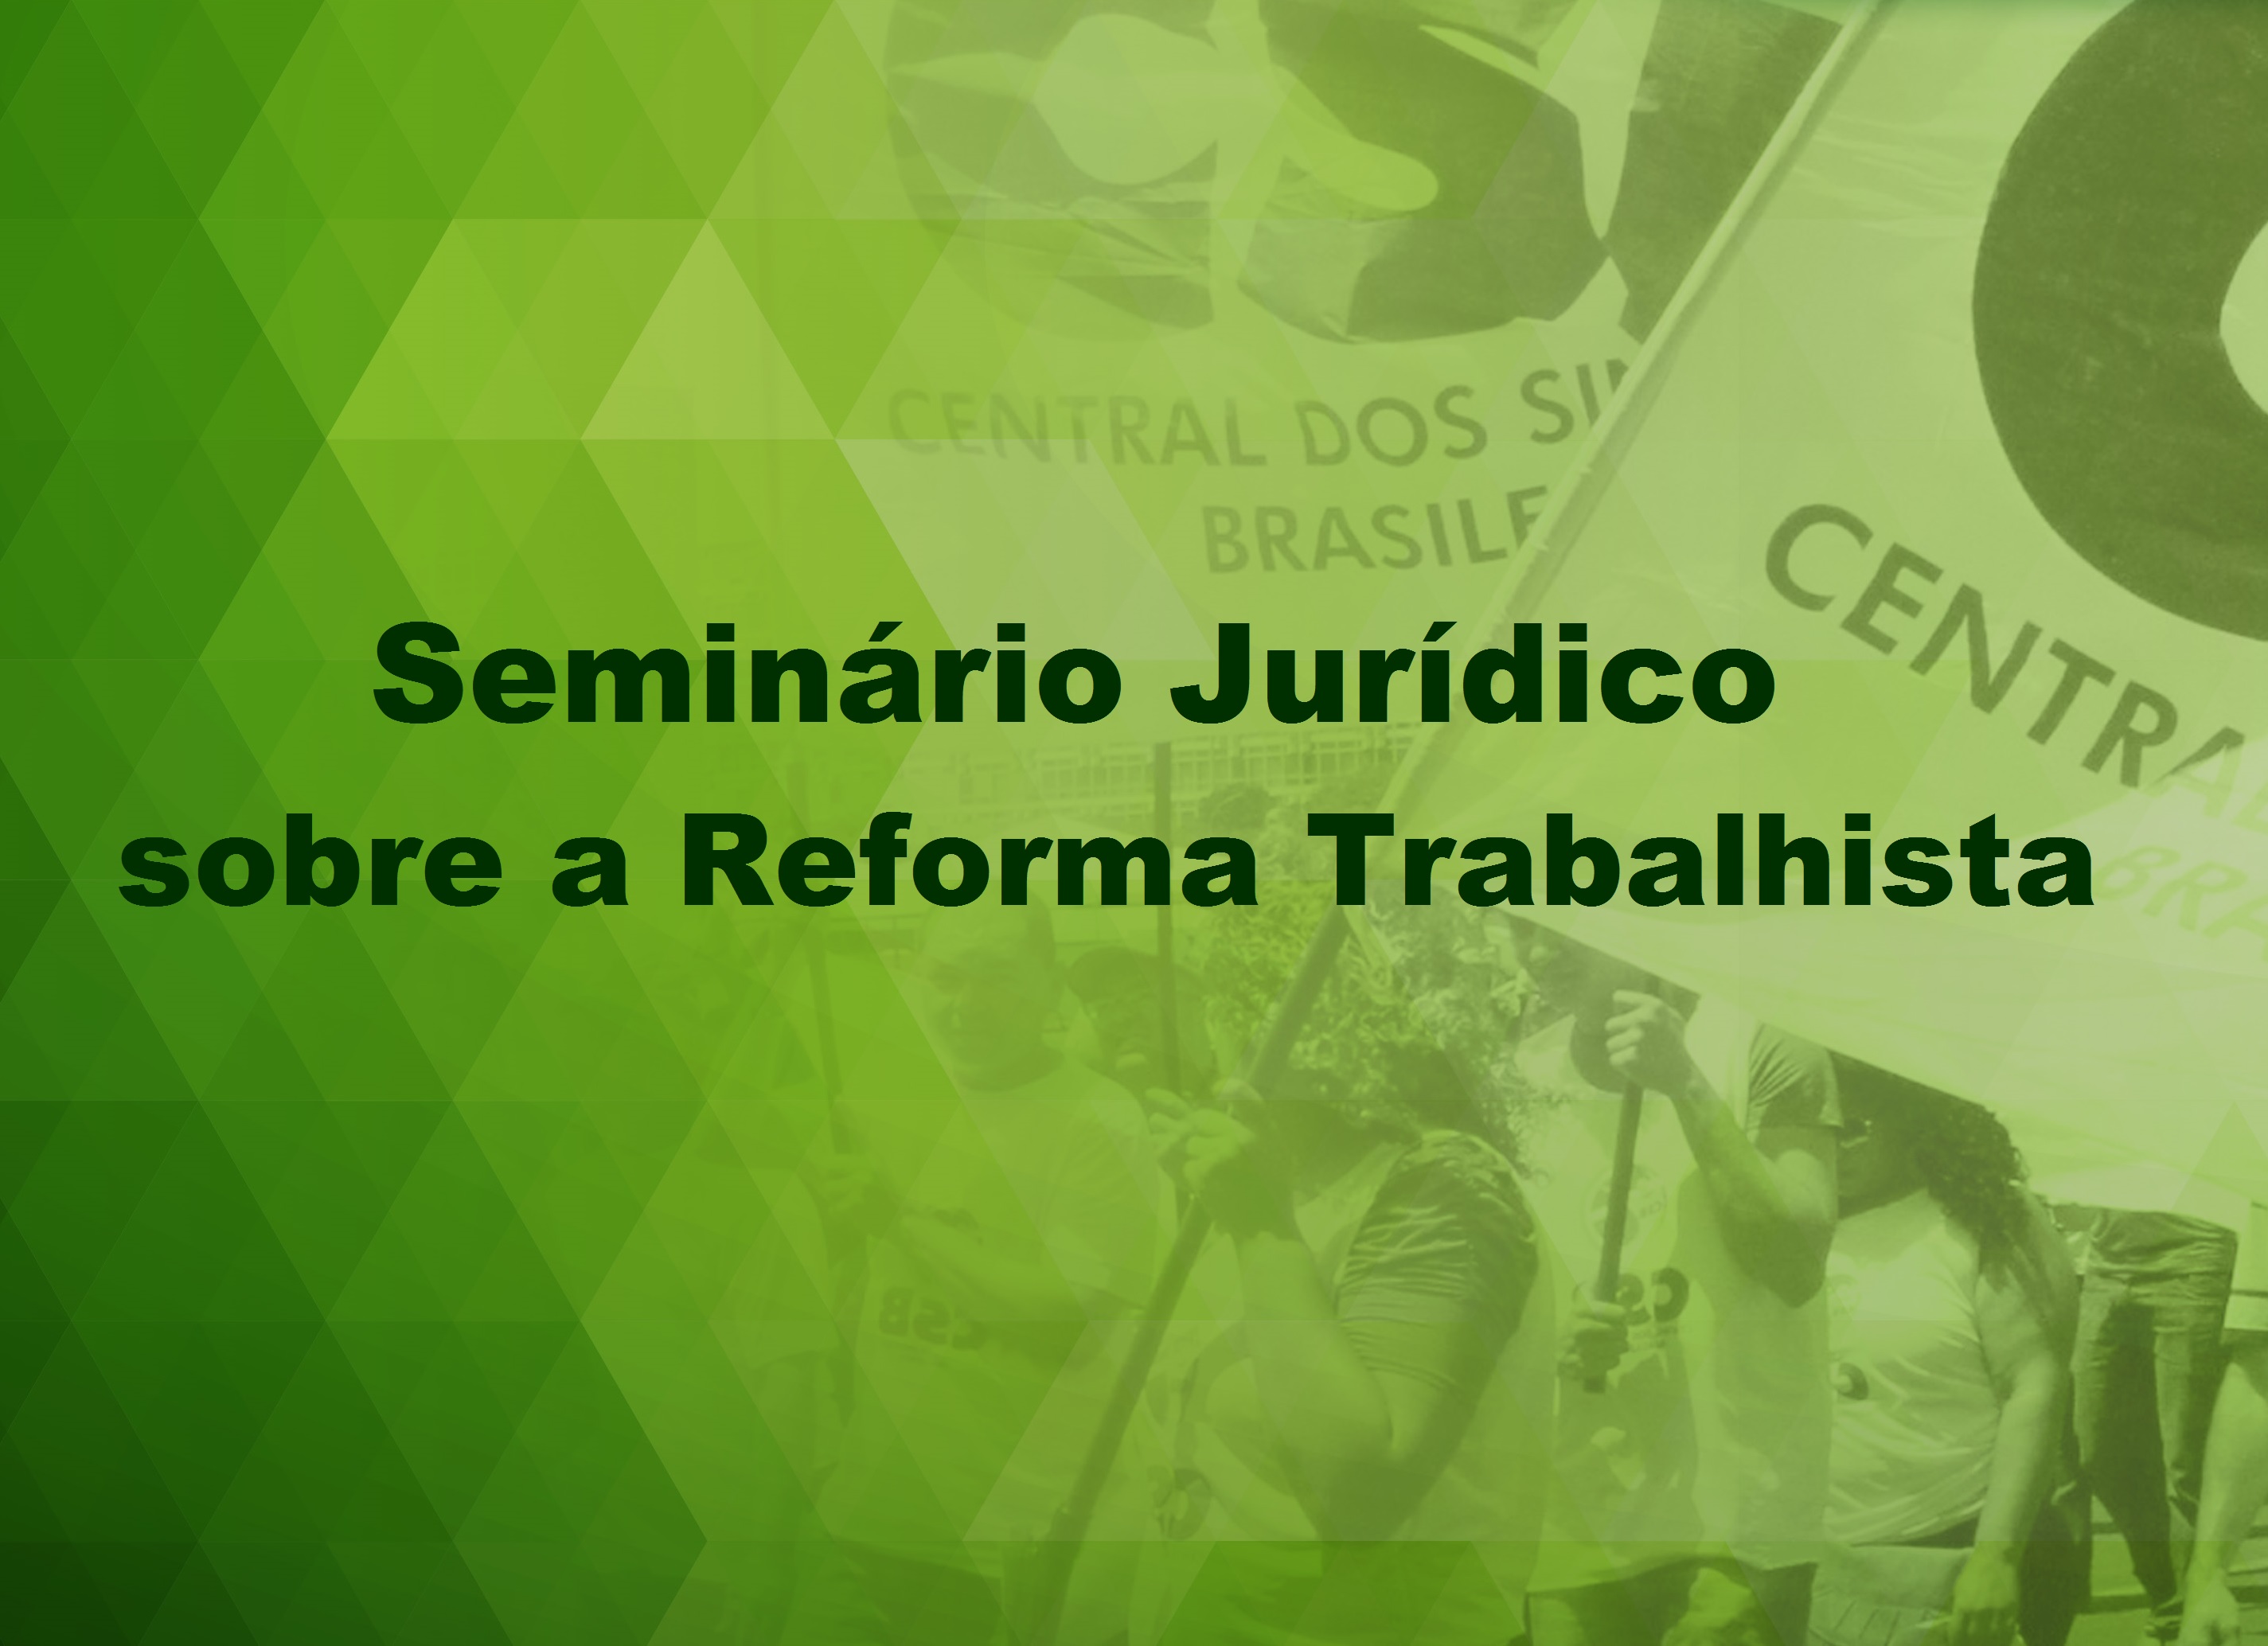 CSB promove Seminário Jurídico sobre a Reforma Trabalhista em São Paulo